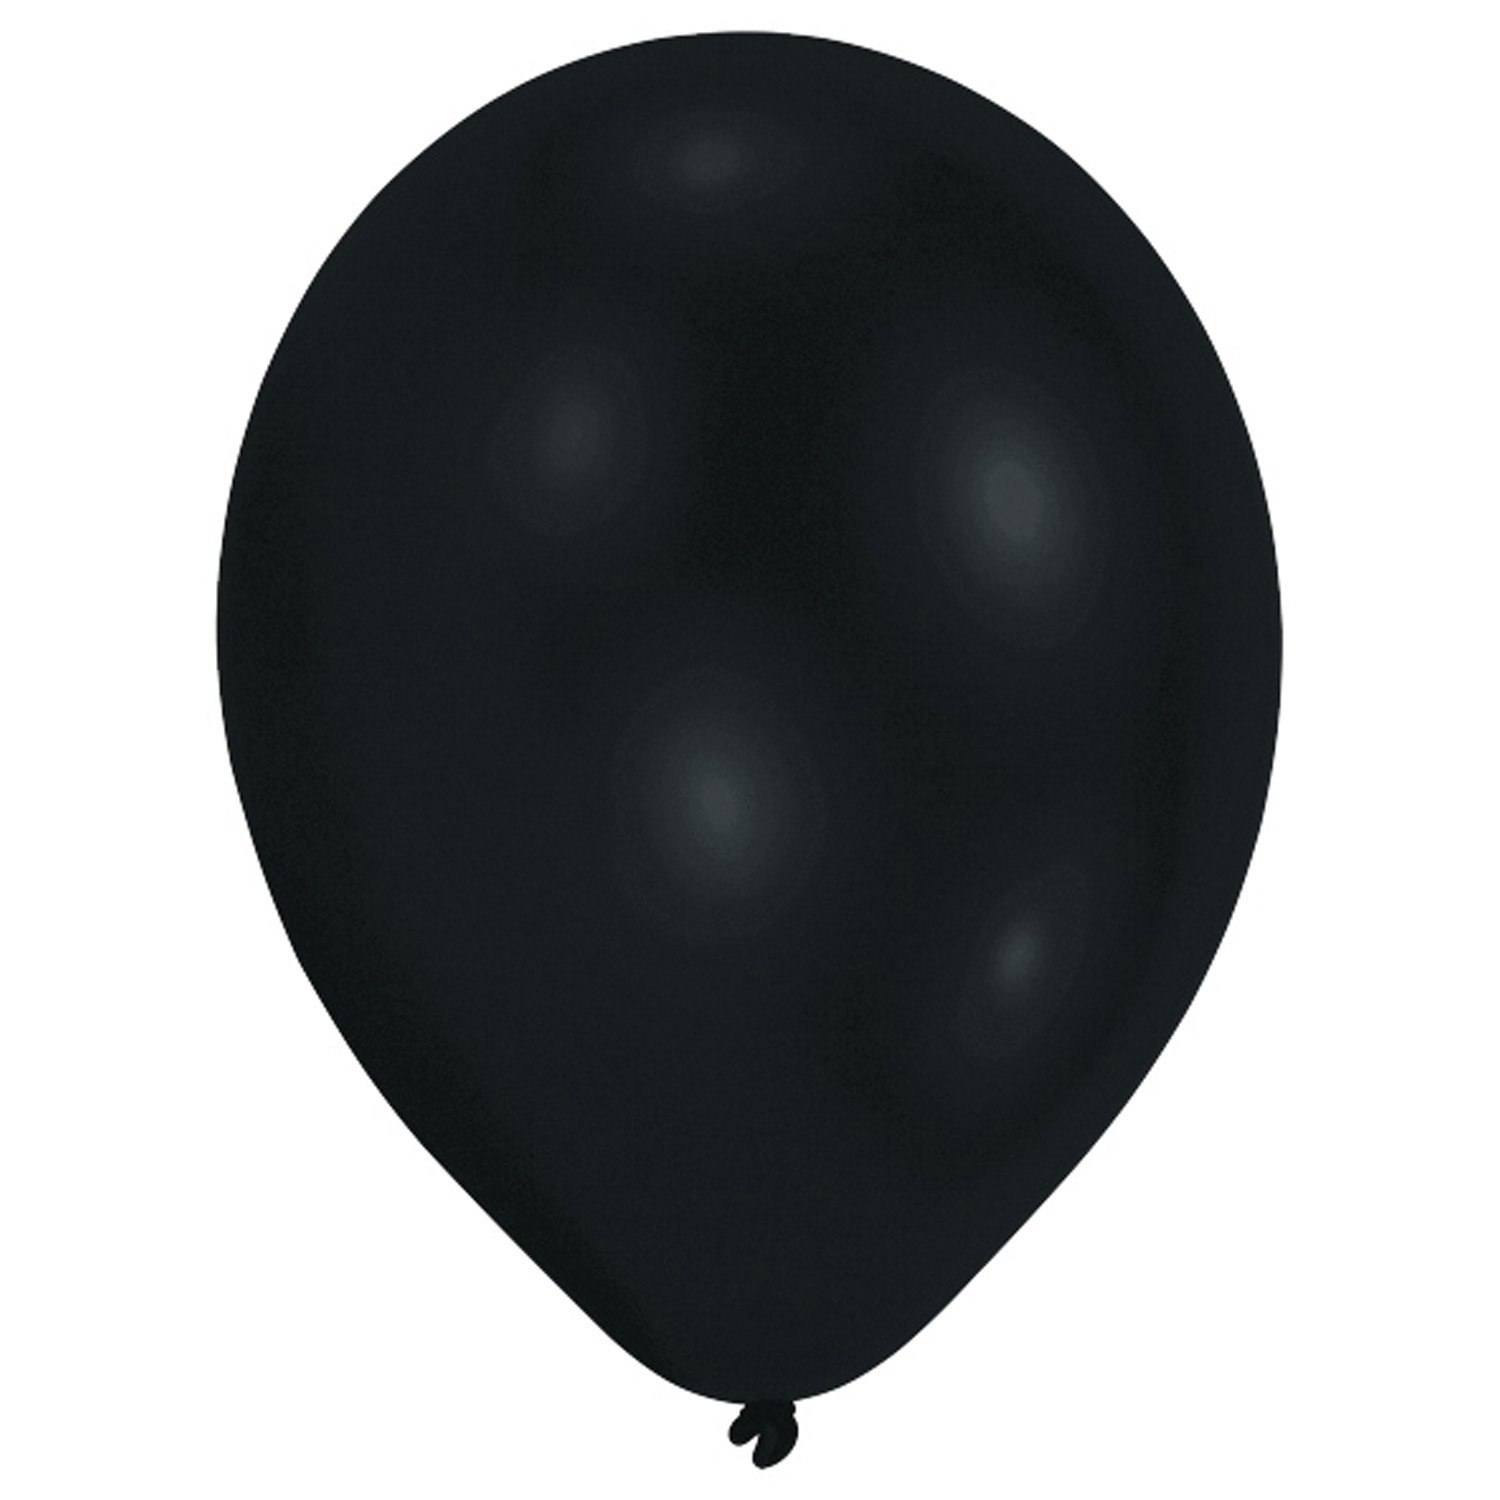 Latex Ballon Luftballon schwarz 10 Stück - D 27,5cm Heliumballon, black - 1